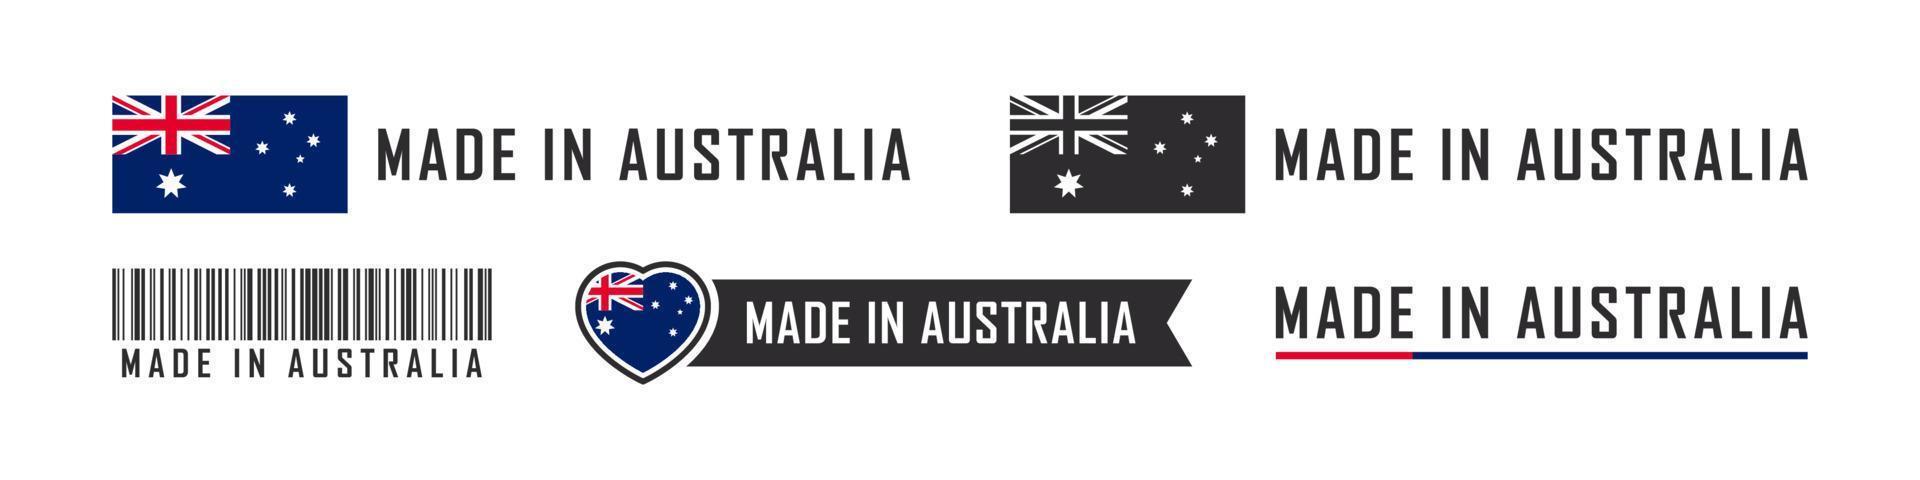 logo ou étiquettes fabriqués en australie. emblèmes de produits australiens. illustration vectorielle vecteur